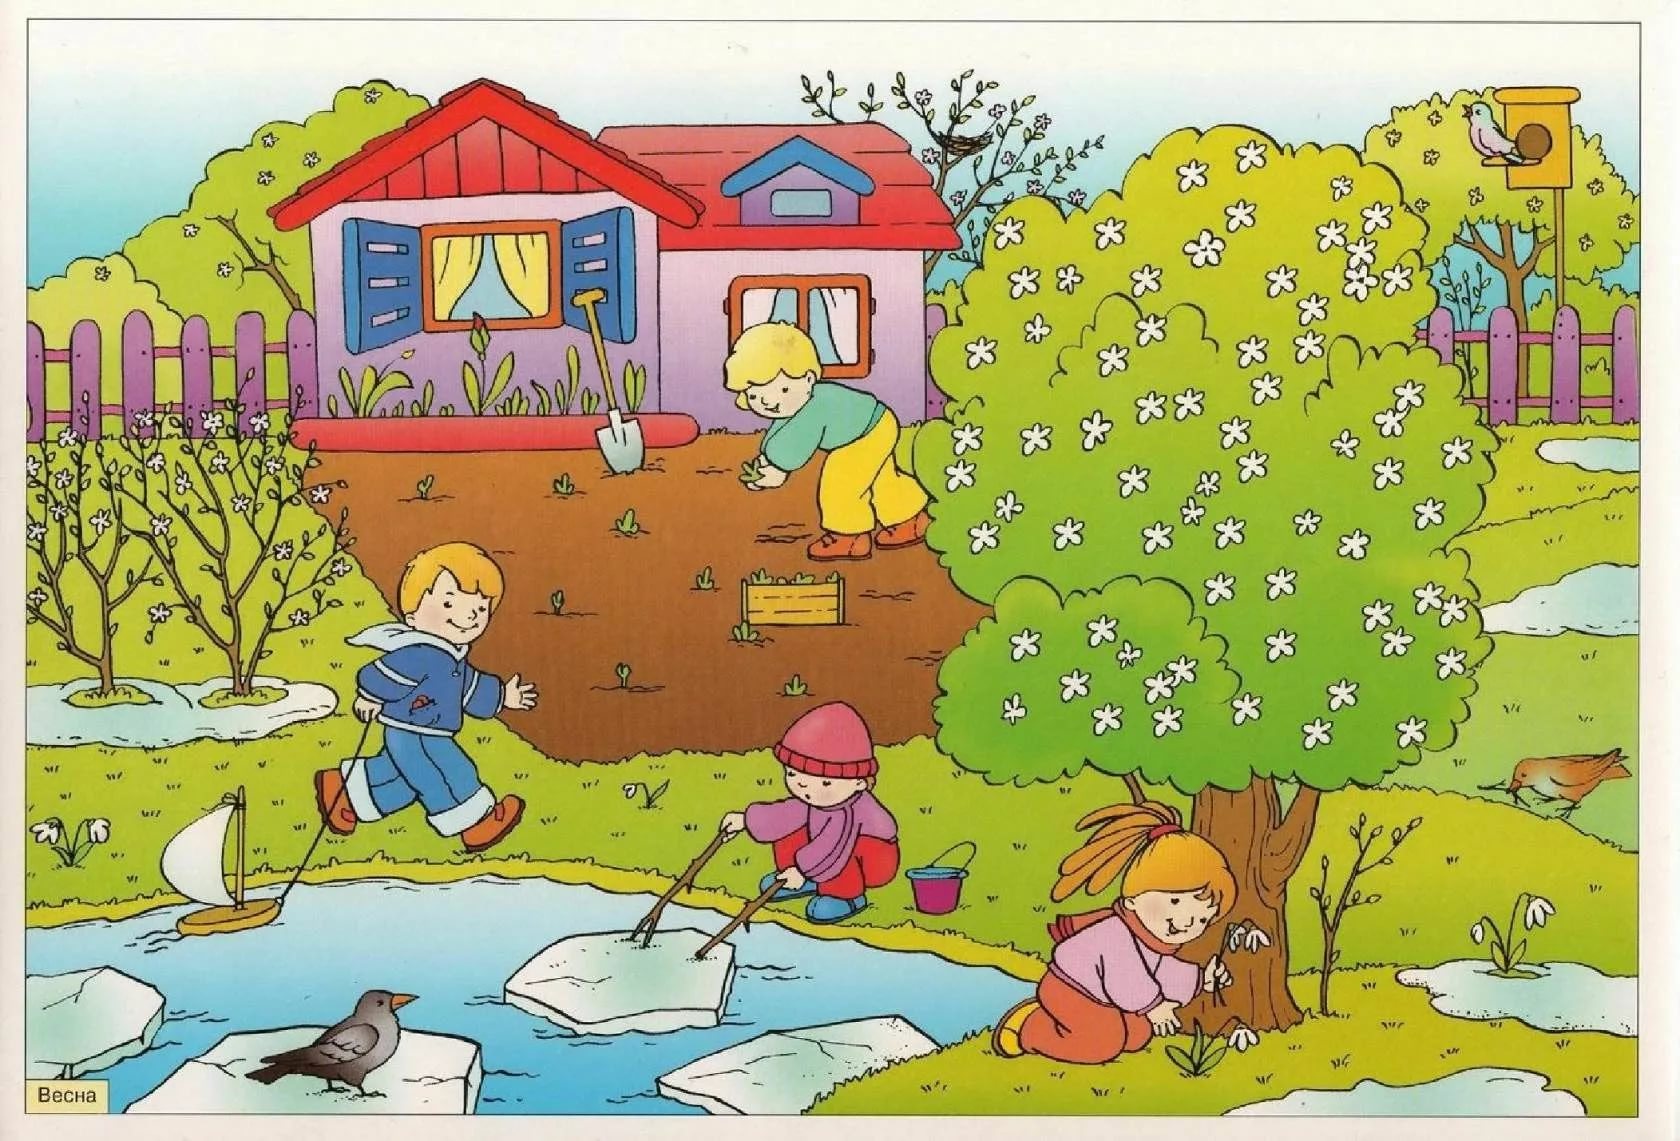 Картина Весна для детей